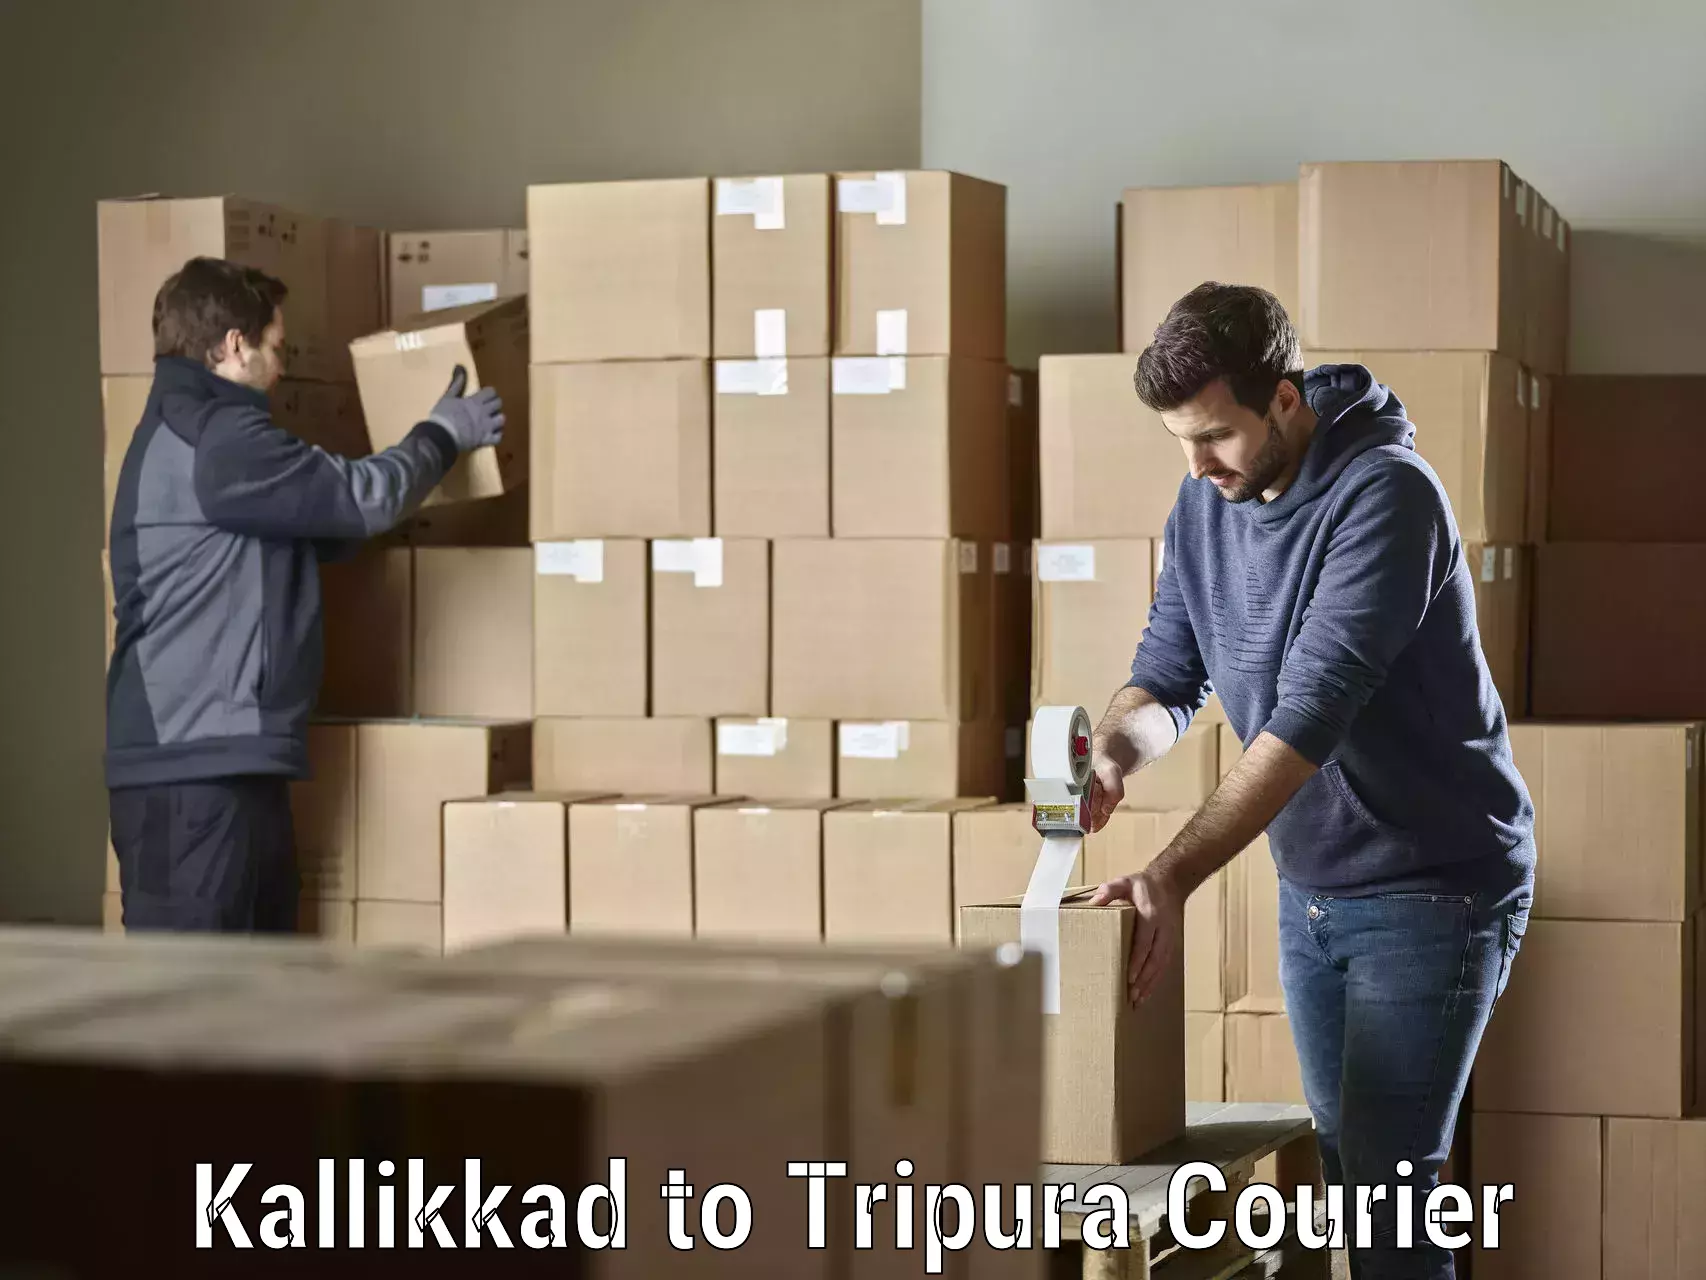 Professional parcel services Kallikkad to IIIT Agartala